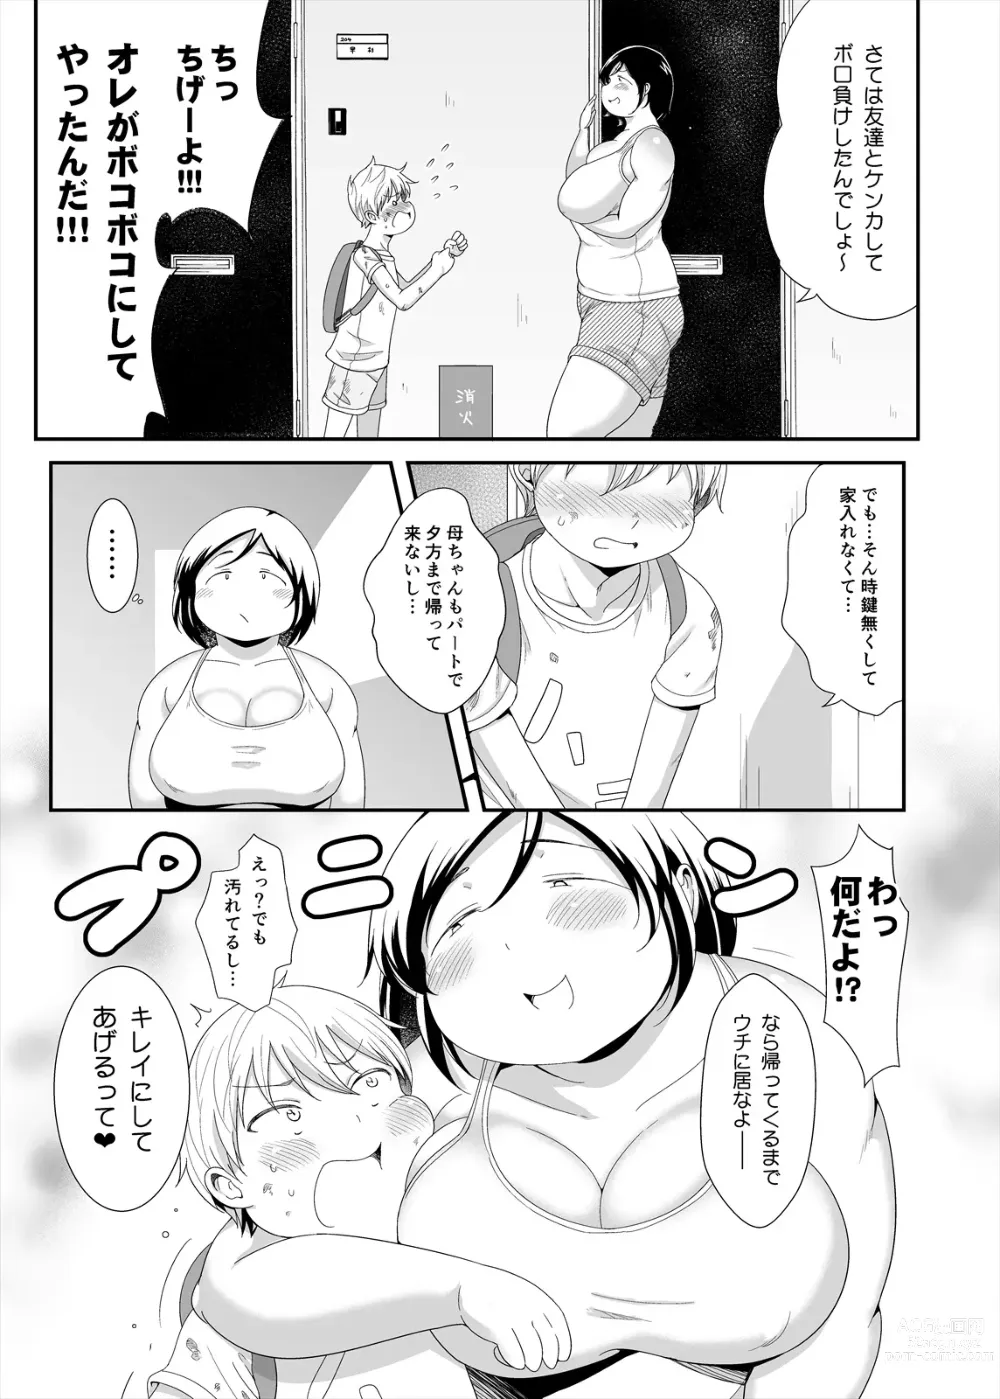 Page 7 of doujinshi Otonari no jimipotya onechan